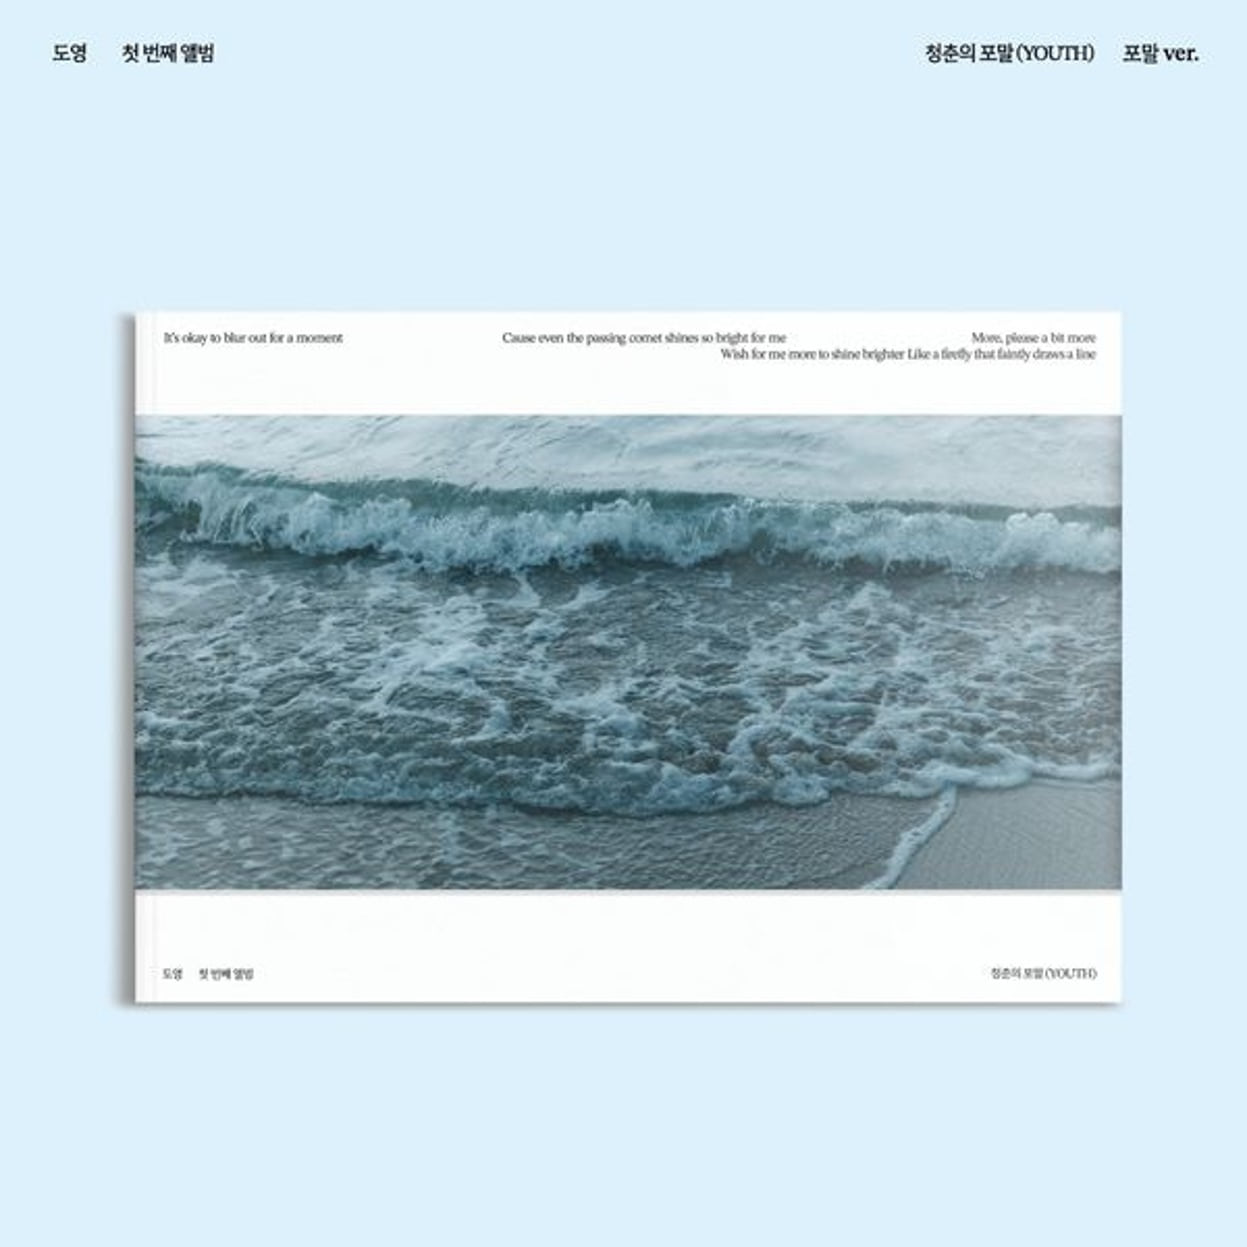 ドヨン(DOYOUNG) - 1stアルバム [青春の泡沫(YOUTH)] (泡沫Ver.)